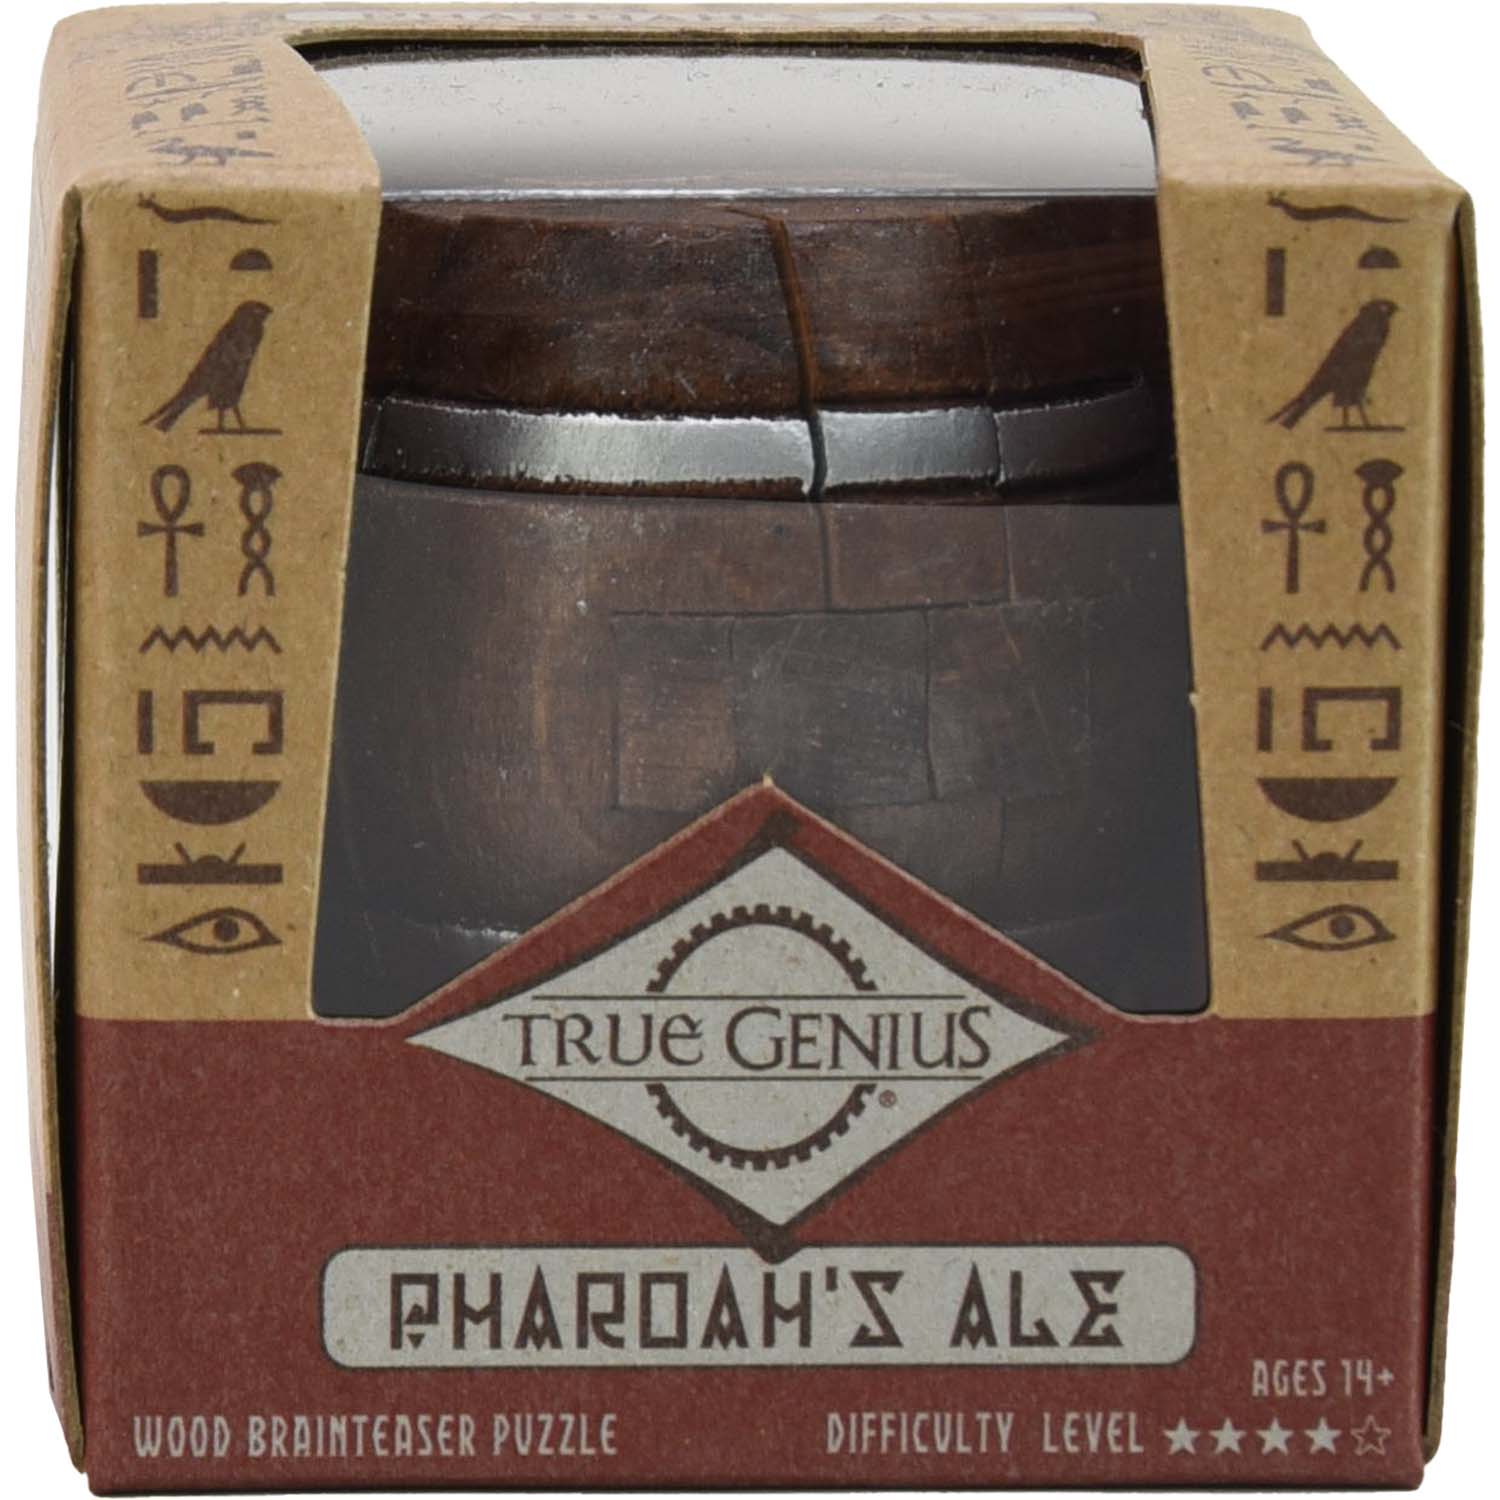 Pharoah's Ale